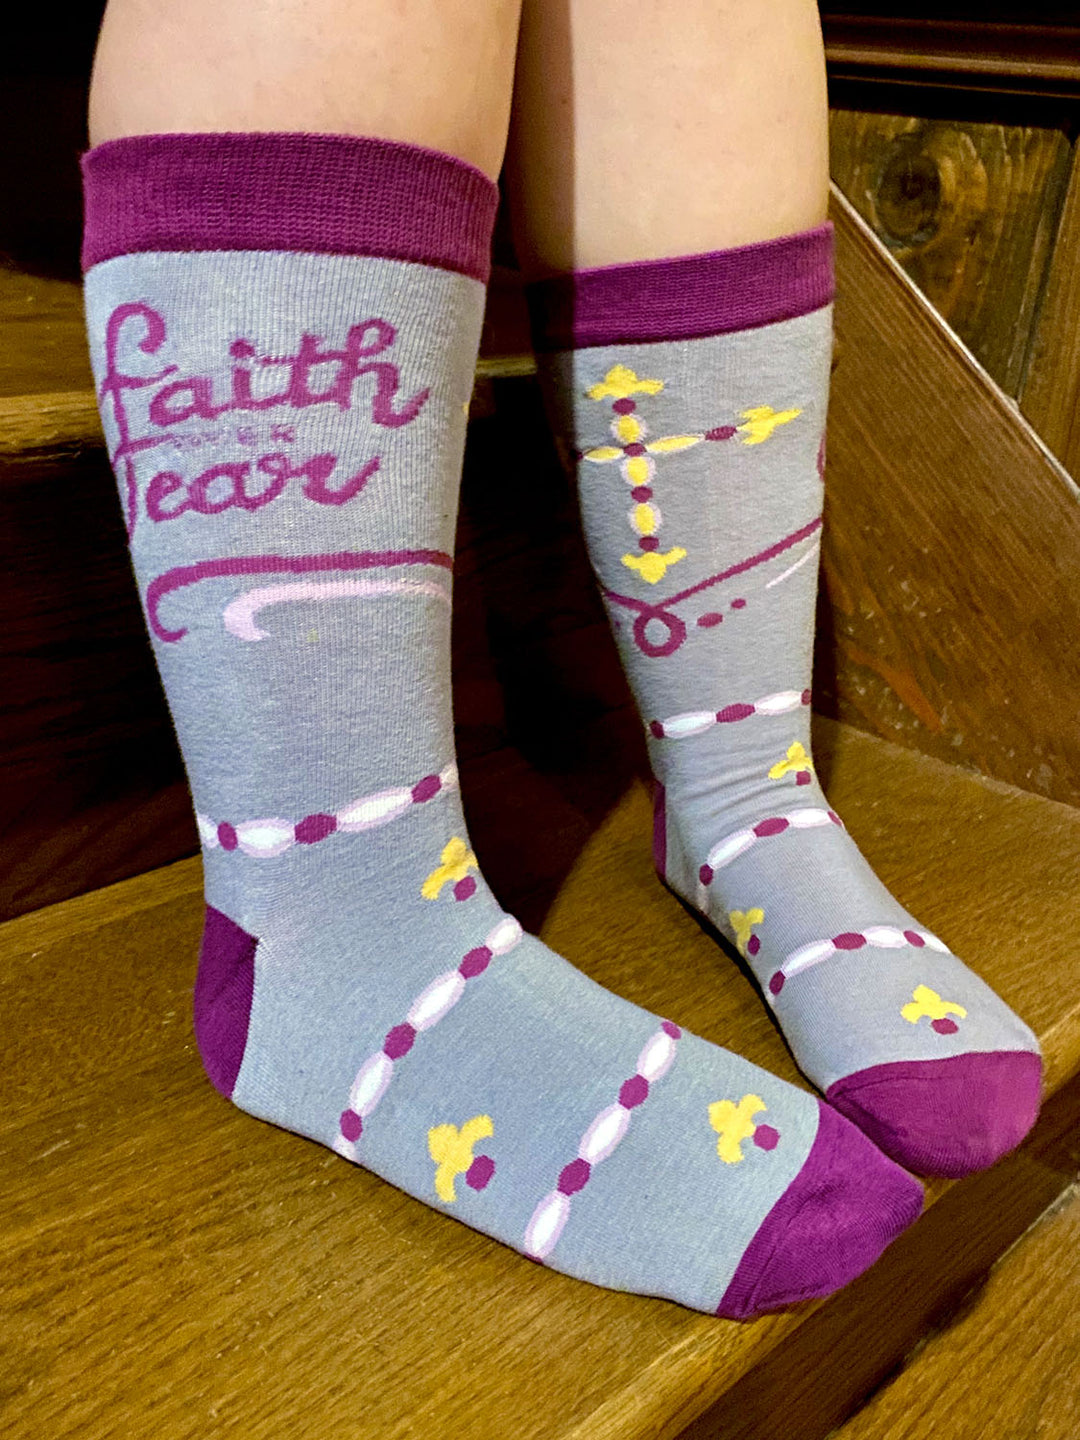 Inspirational socks for ladies Faith Over Fear 